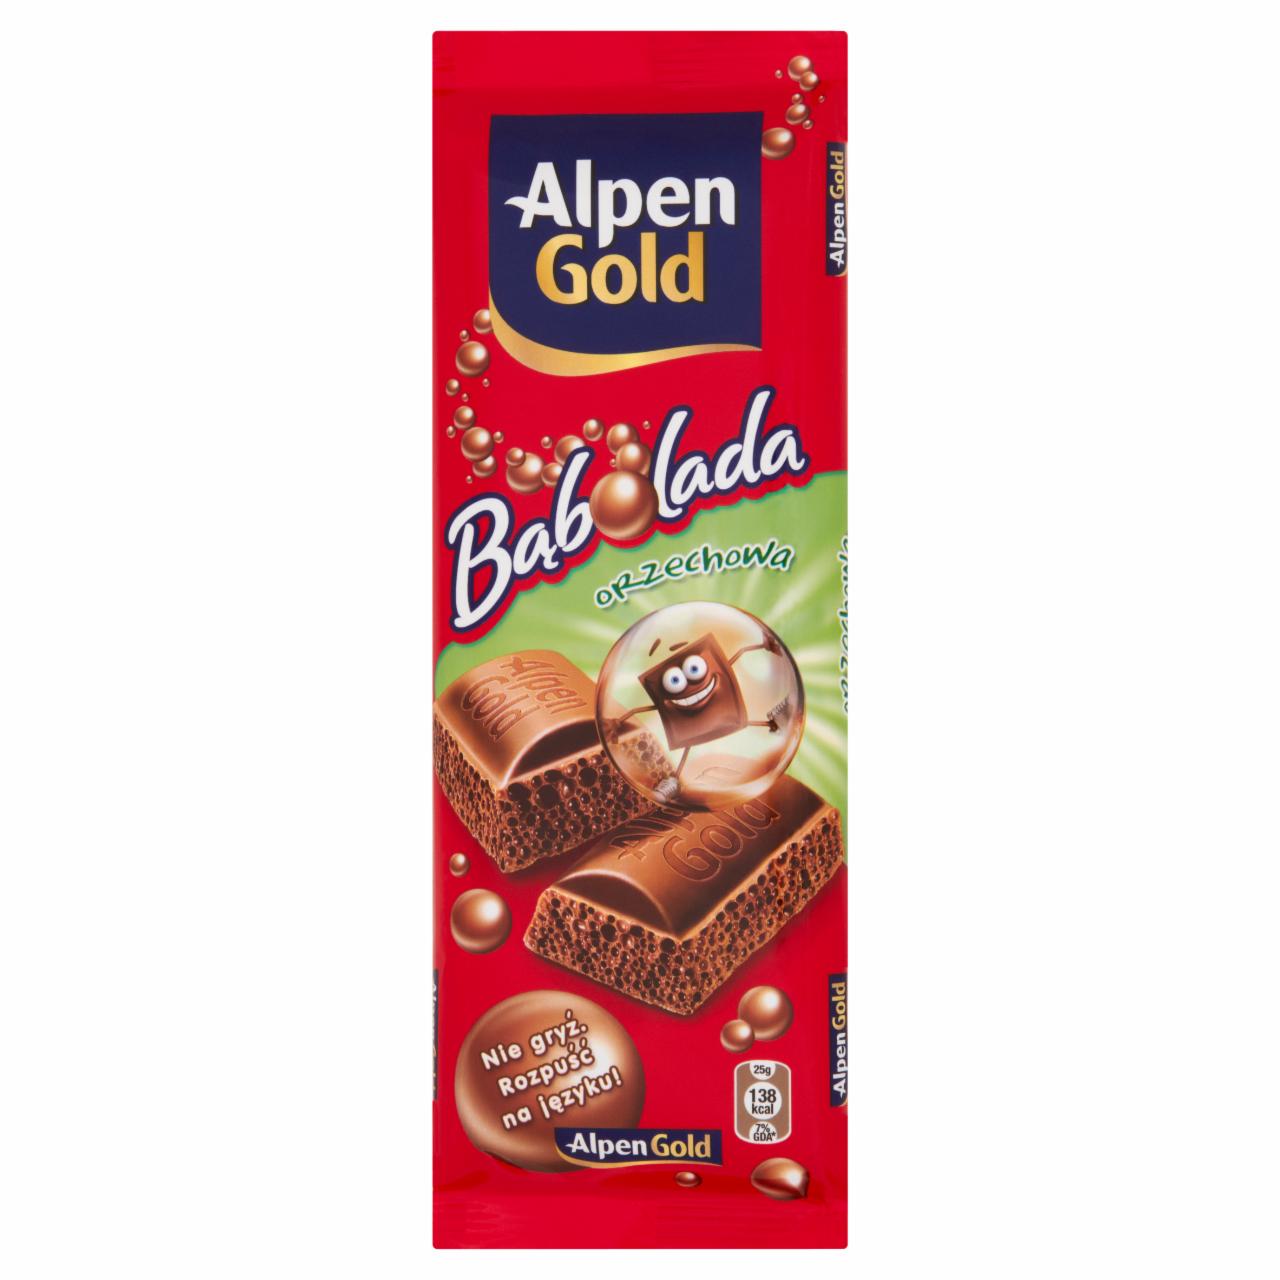 Zdjęcia - Alpen Gold Bąbolada orzechowa Czekolada 80 g